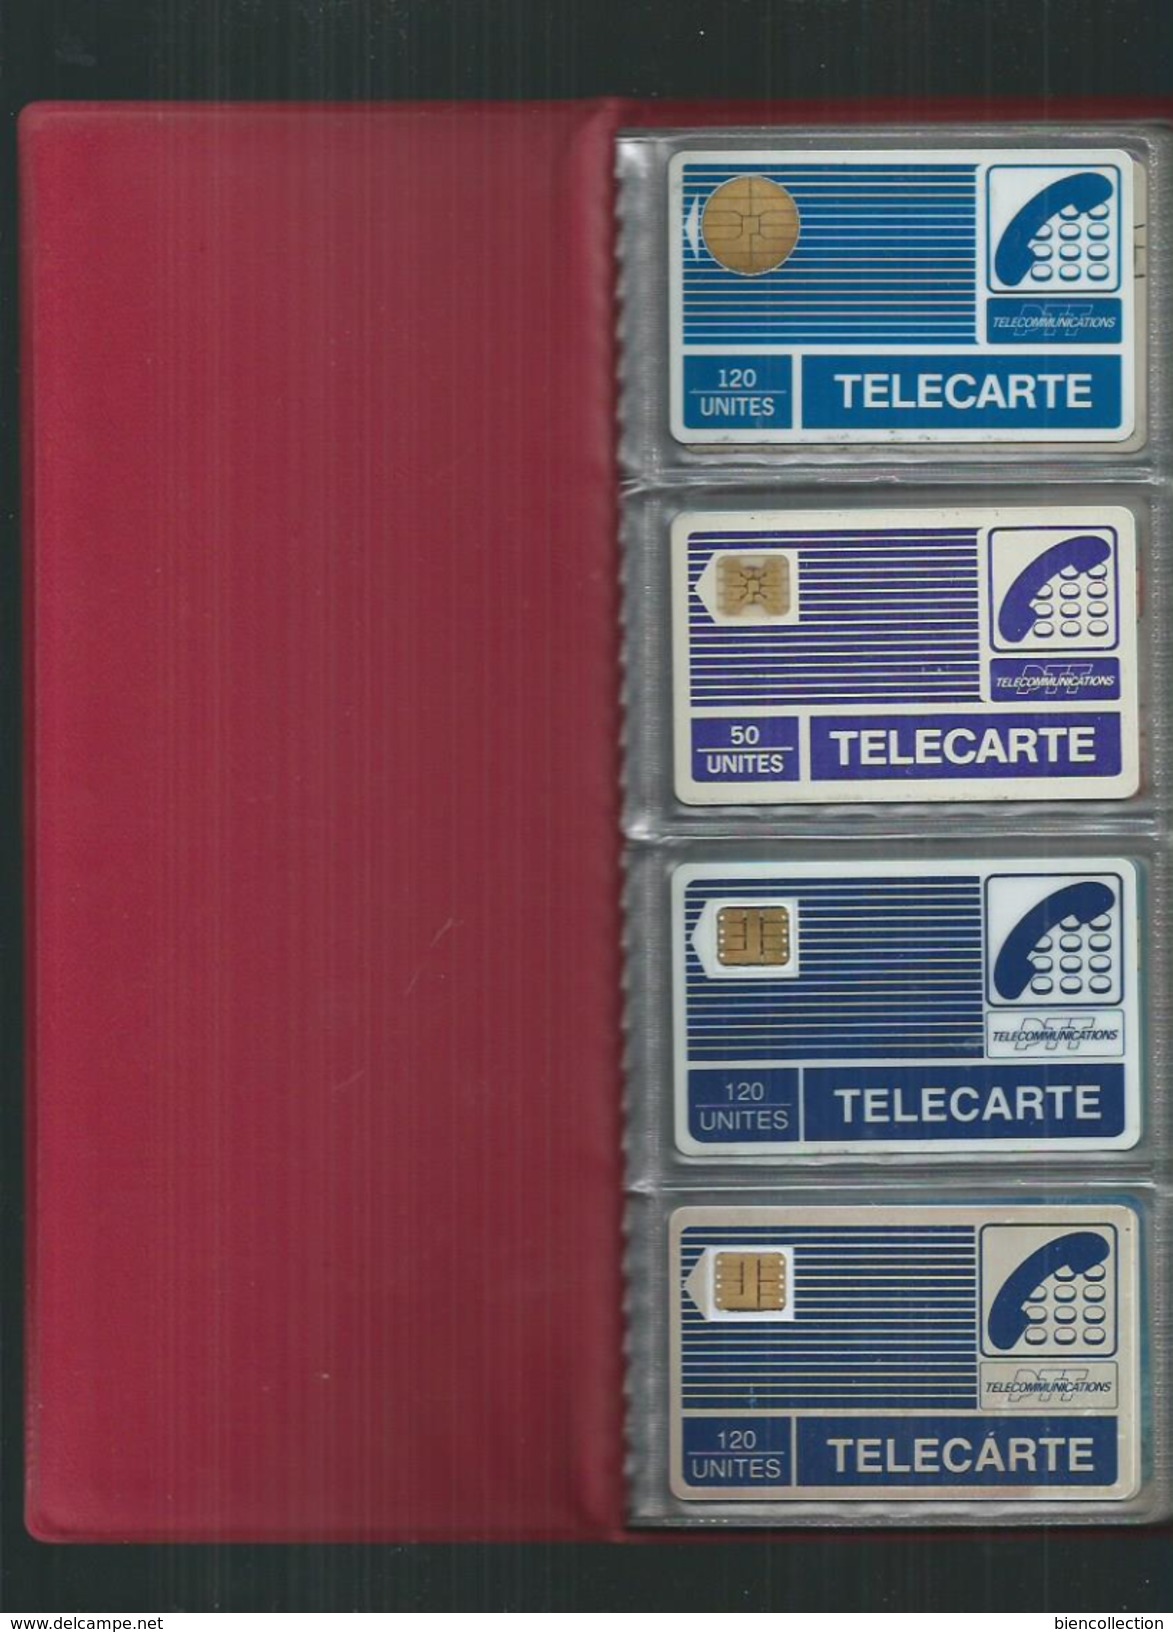 1 Album  Avec 40 Télécartes .Frais De Port 7.50&euro; France Métropolitaine - Supplies And Equipment